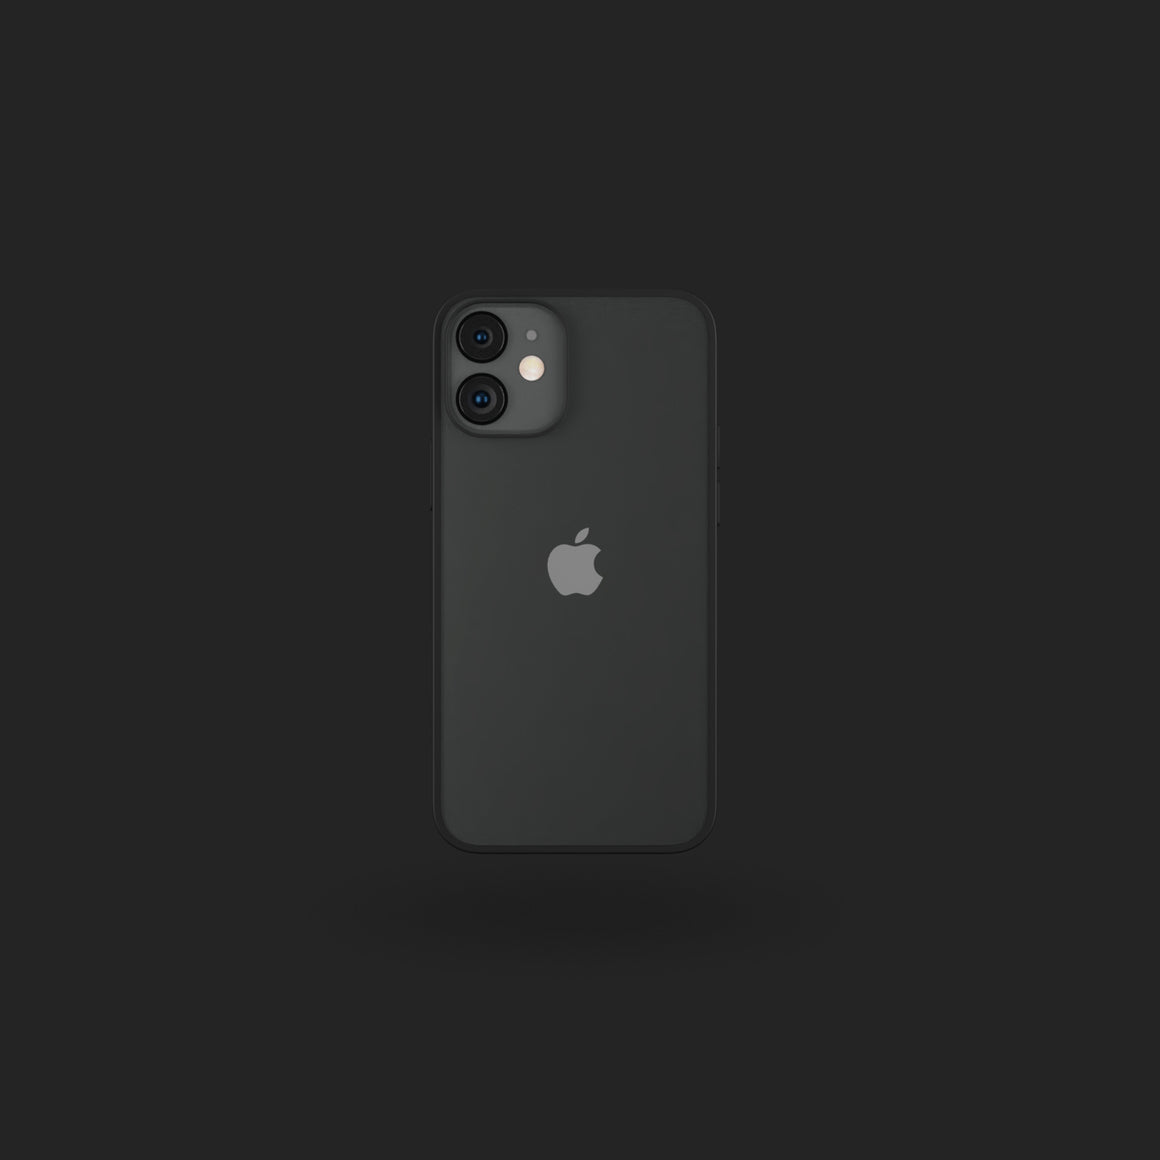 Bumper iPhone 12 Mini Case - Black